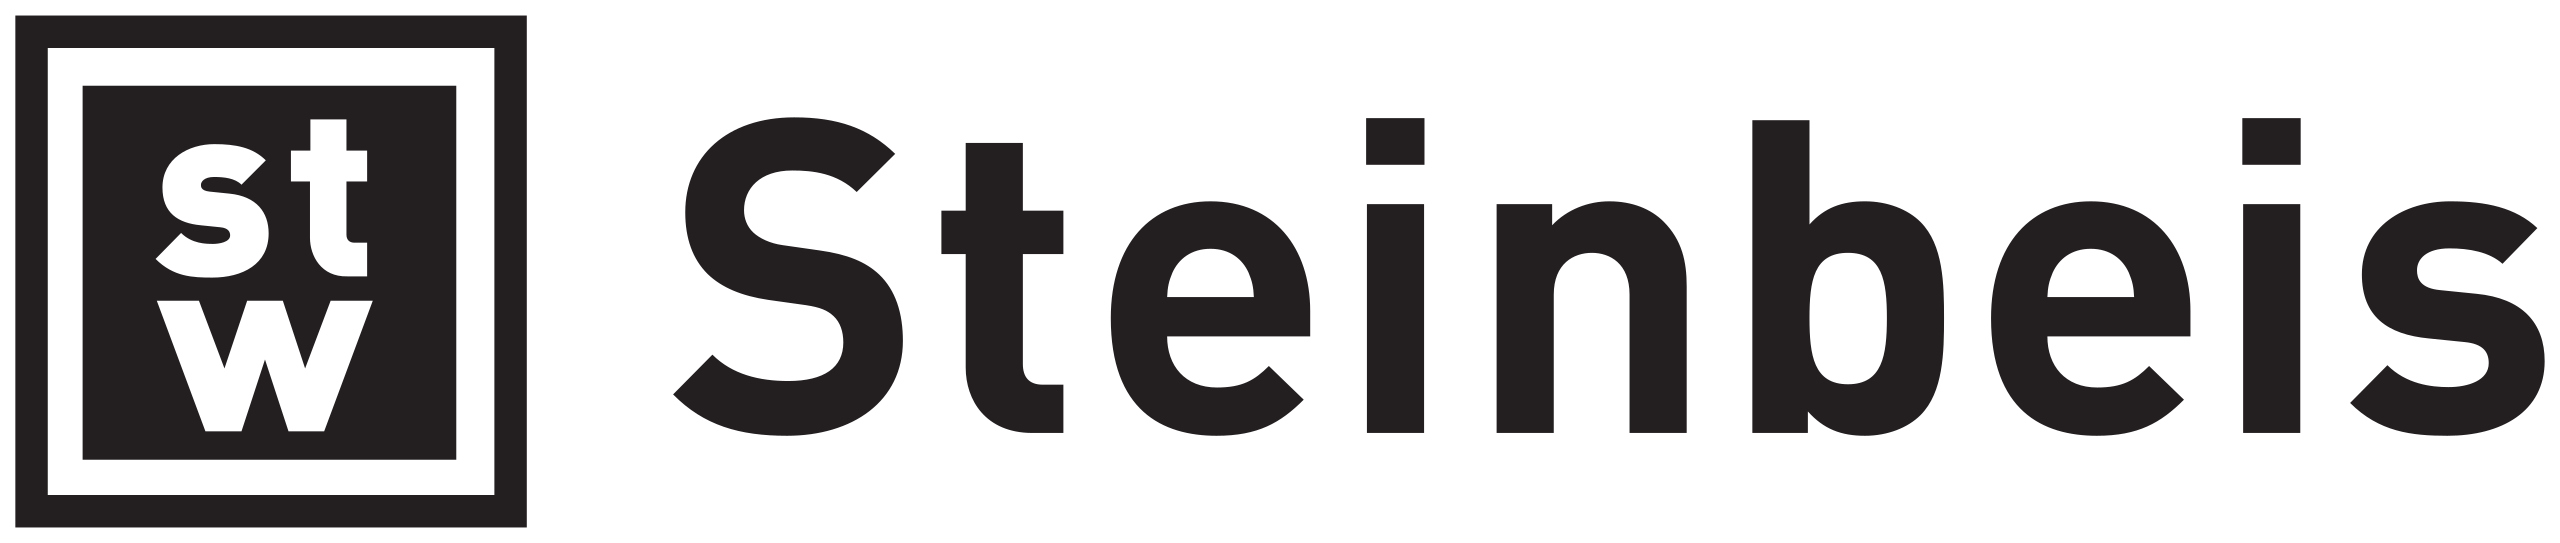 Logo Steinbeis